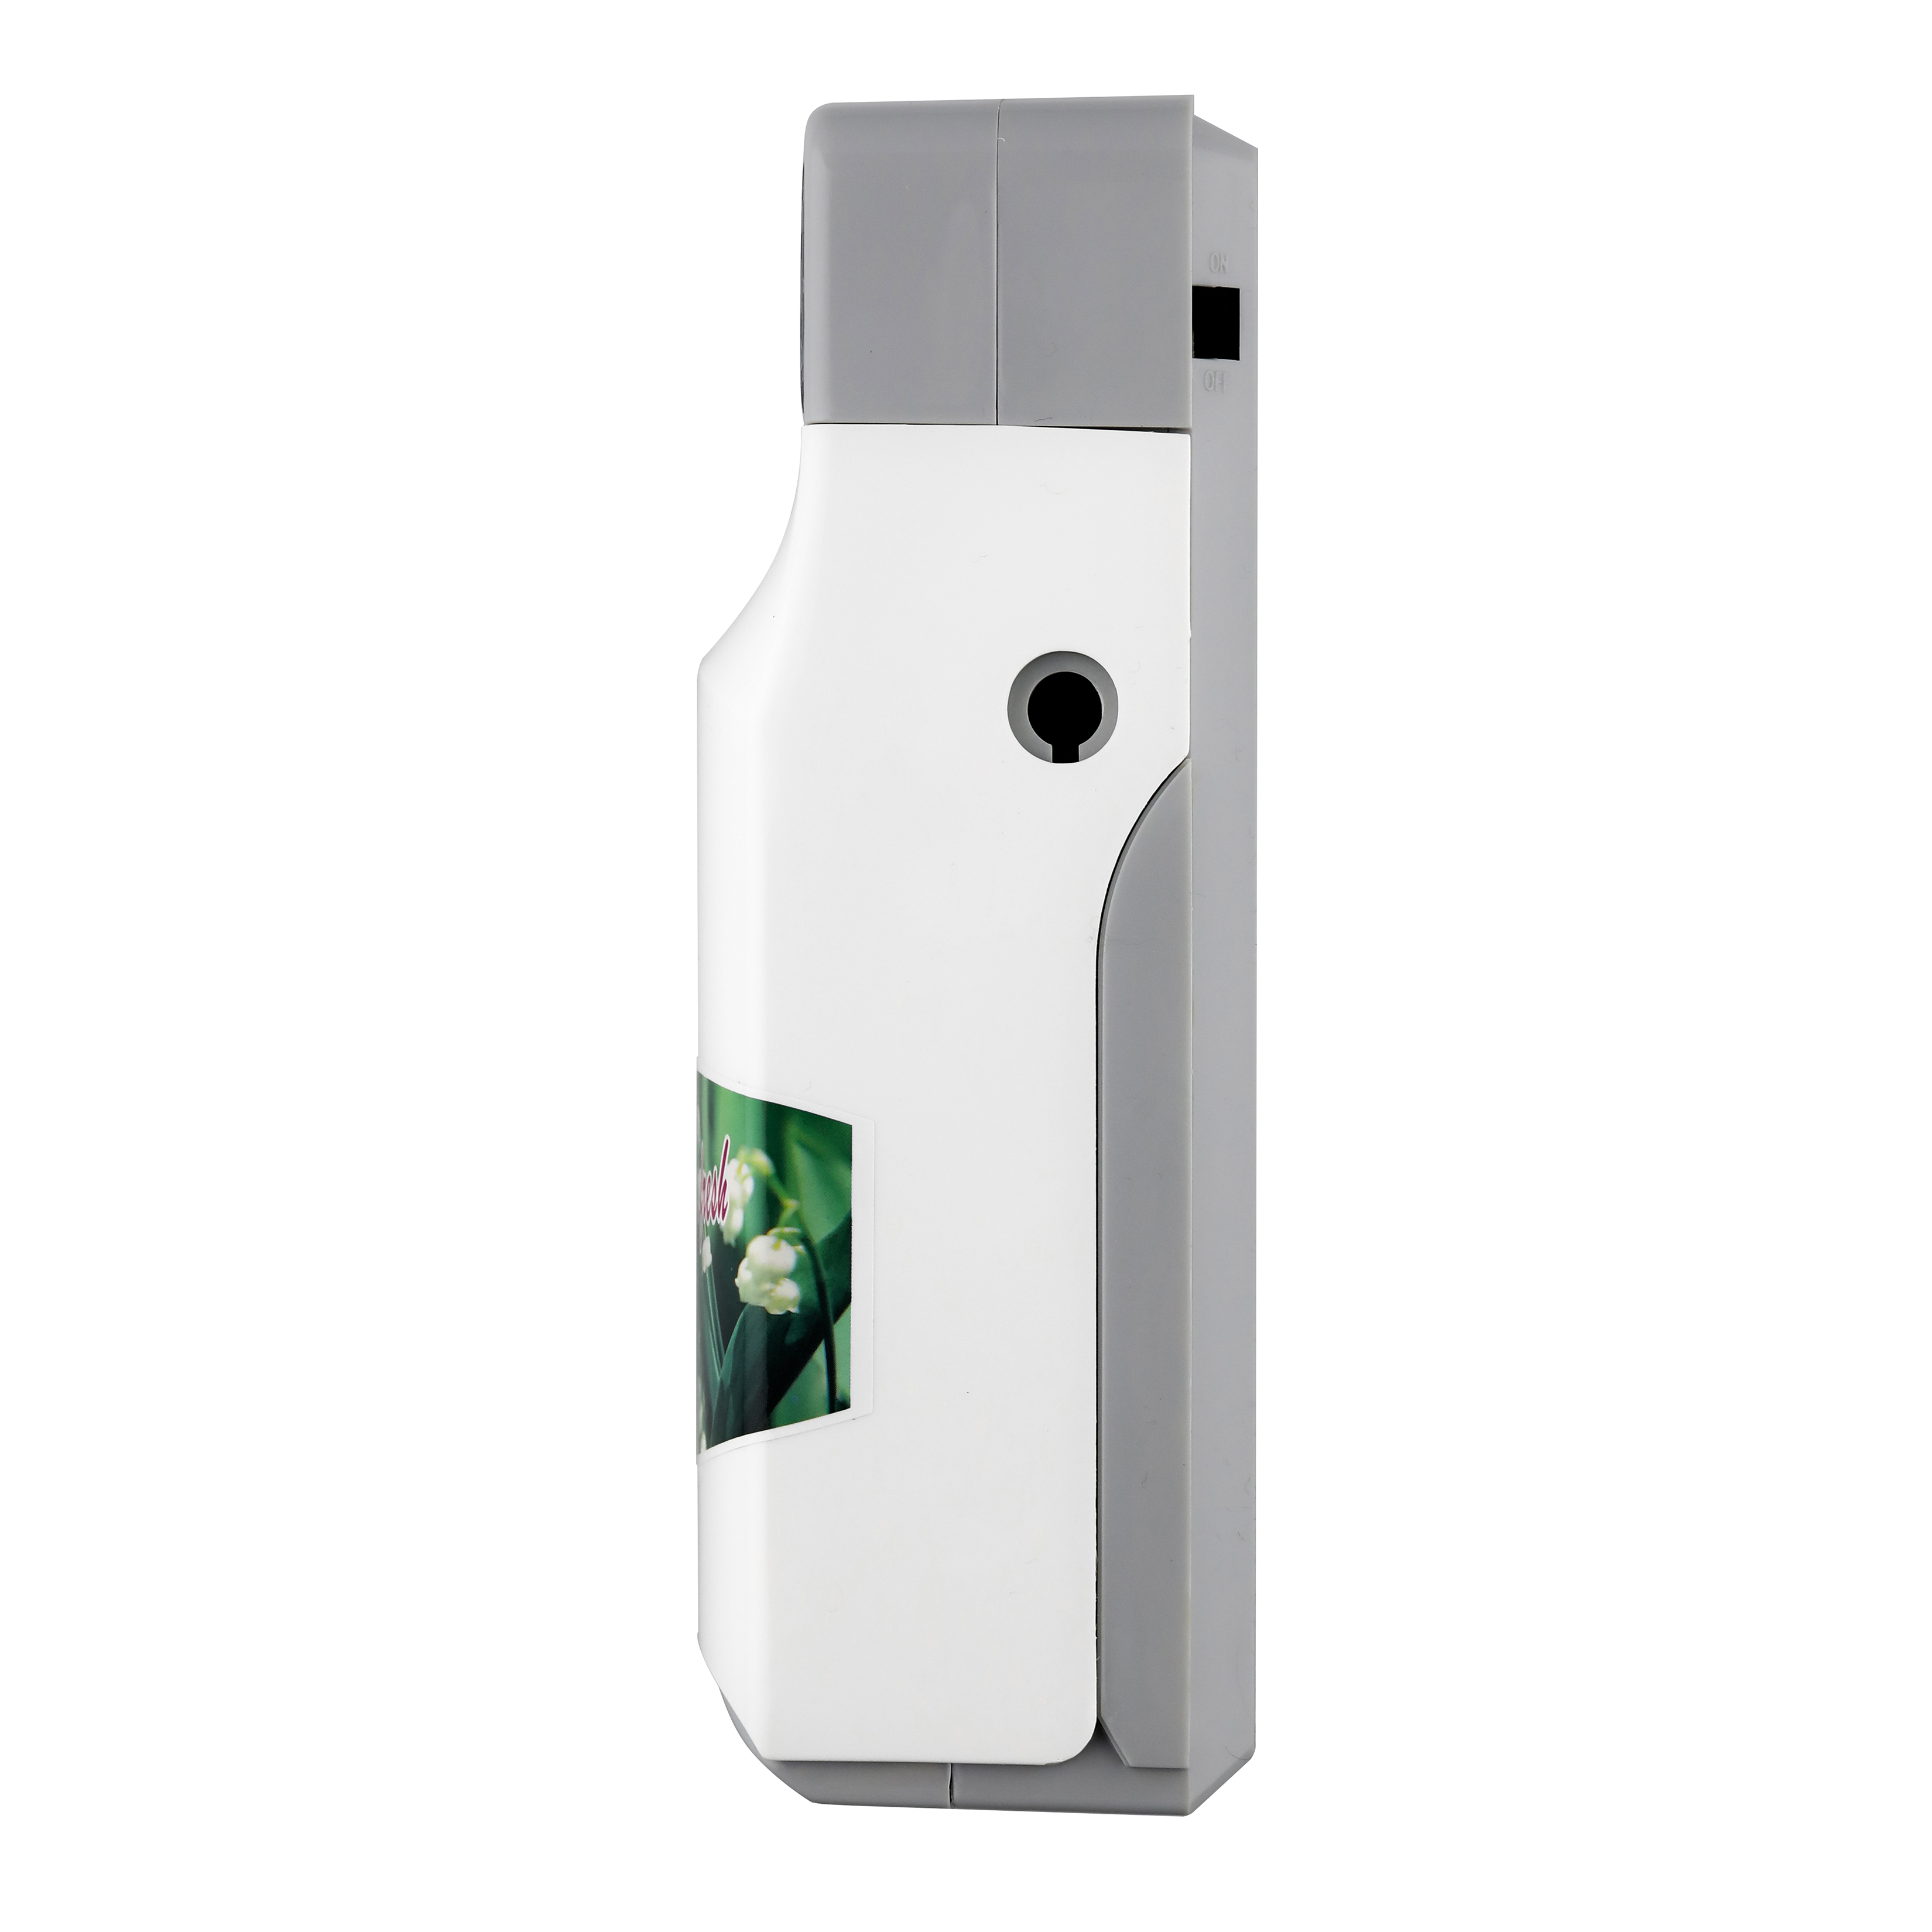 مستشعر حركة المرحاض XinDa PXQ288 LCD يعمل بالبطارية معطر هواء أوتوماتيكي مثبت على الحائط موزع الأيروسول